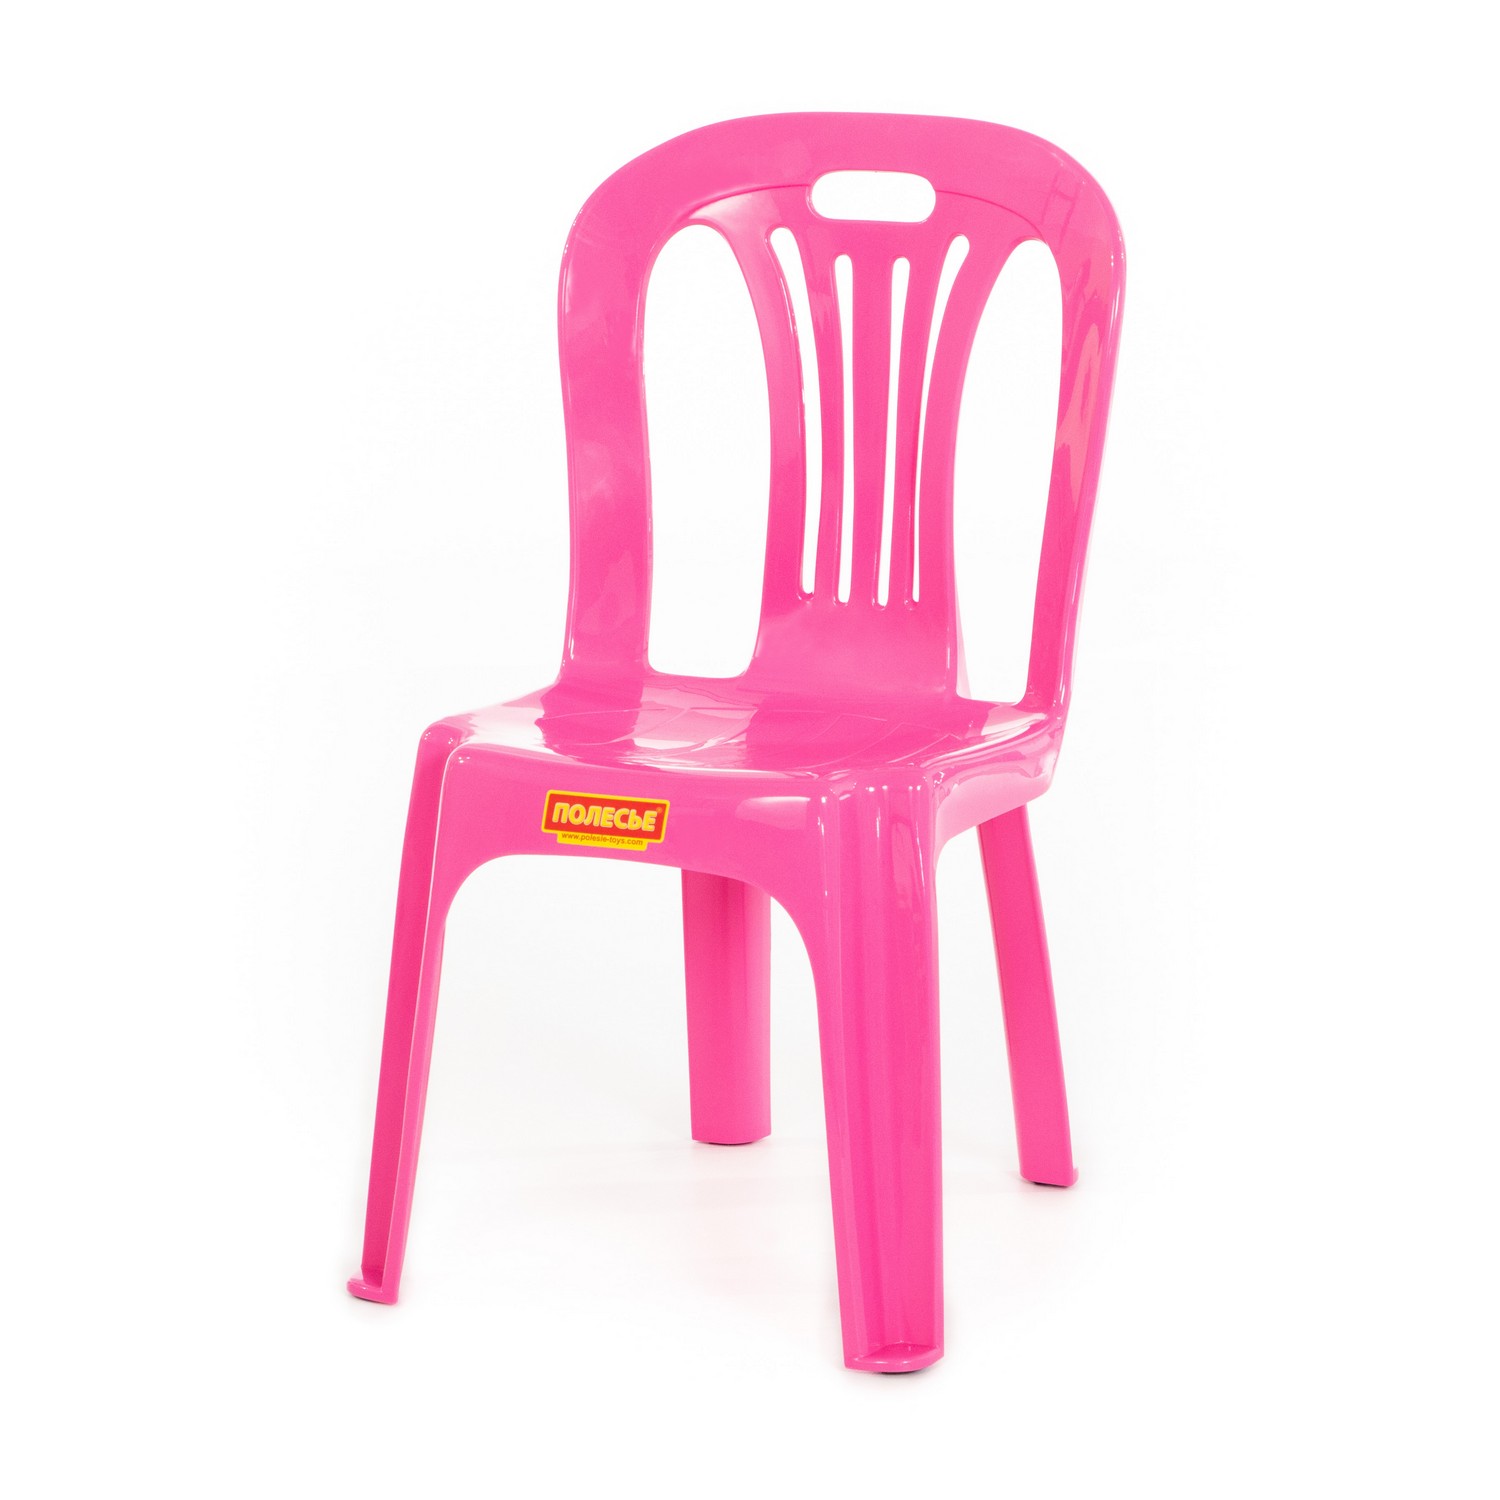 Детский стул пластиковый № 1.  Артикул    44341. Цвет розовый.  Полесье